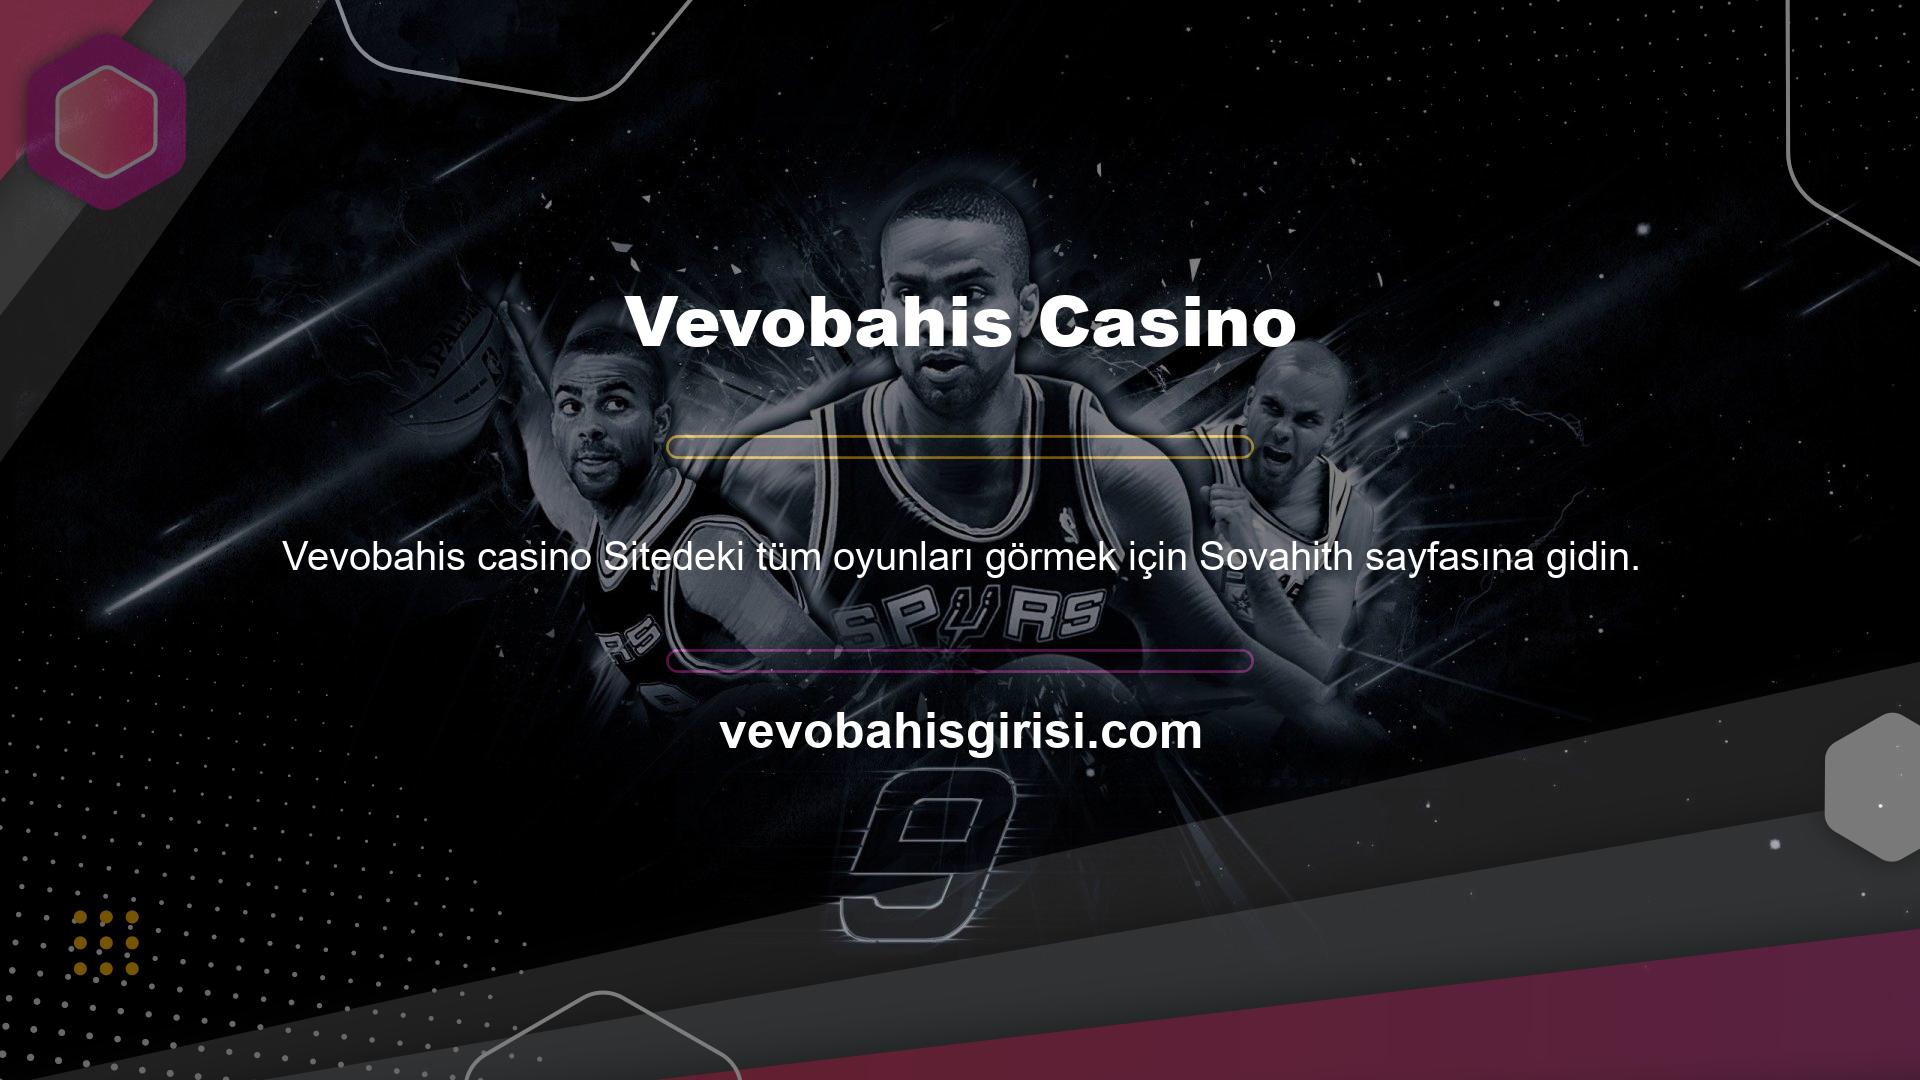 Vevobahis slotlarını oynamak için siteye giriş yaptıktan sonra Casino sekmesine tıklamanız gerekmektedir